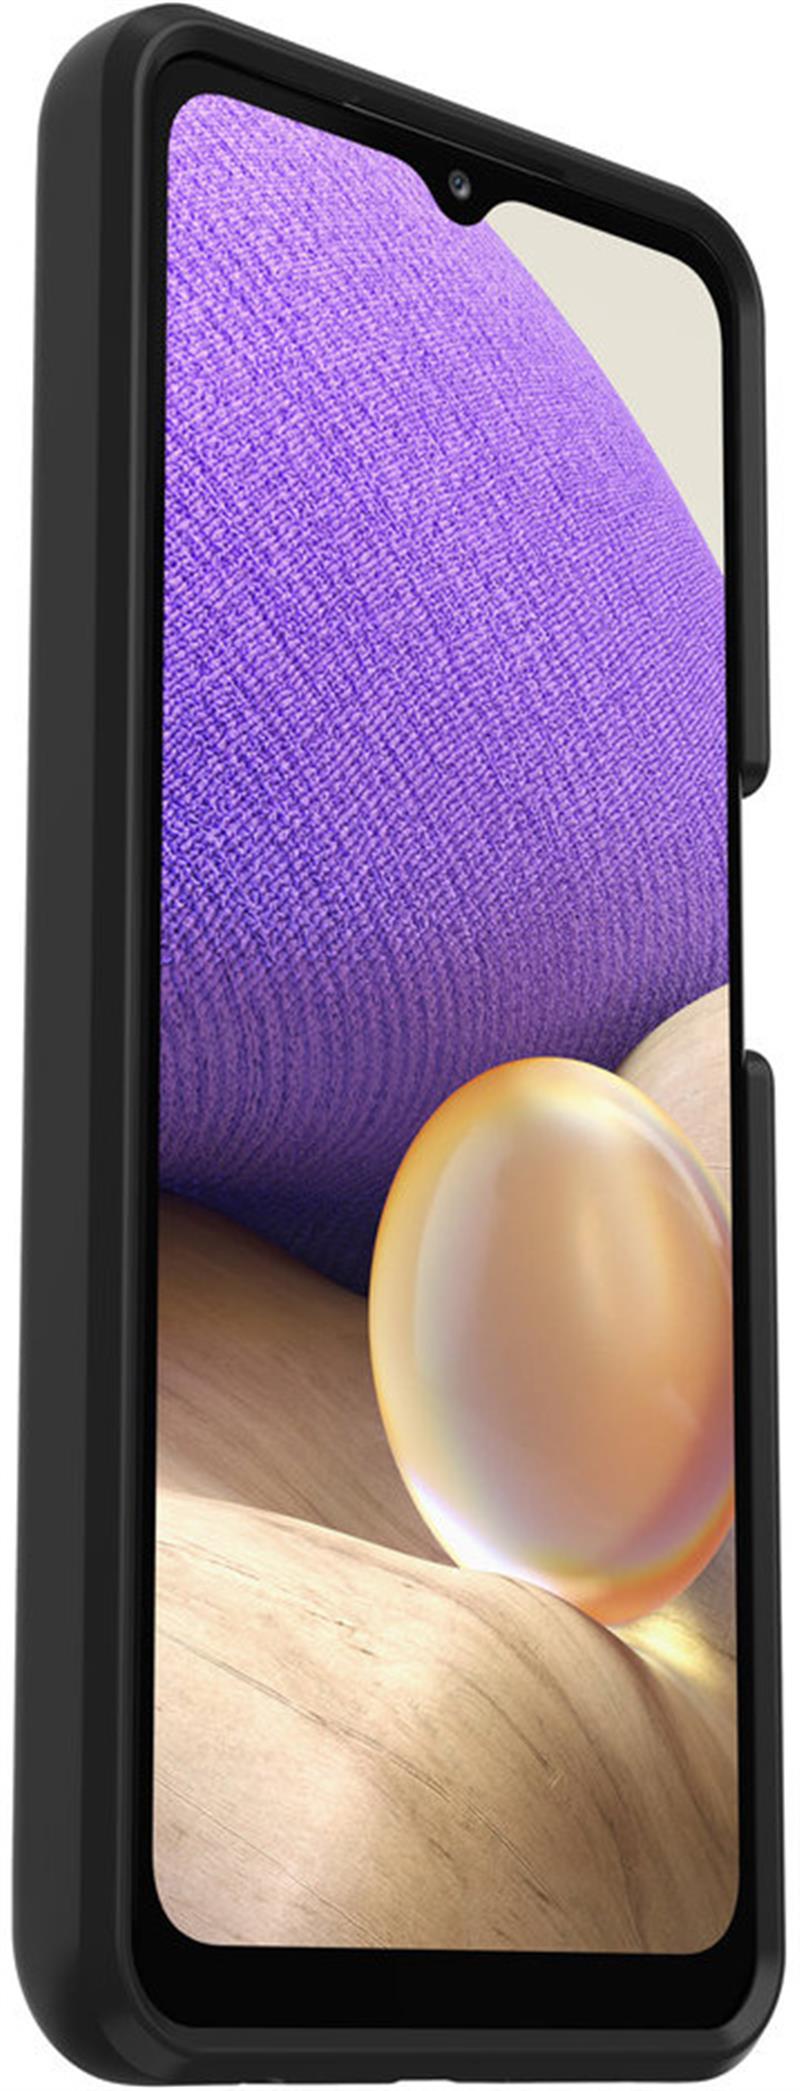 OtterBox React Series voor Samsung Galaxy A32 5G, zwart